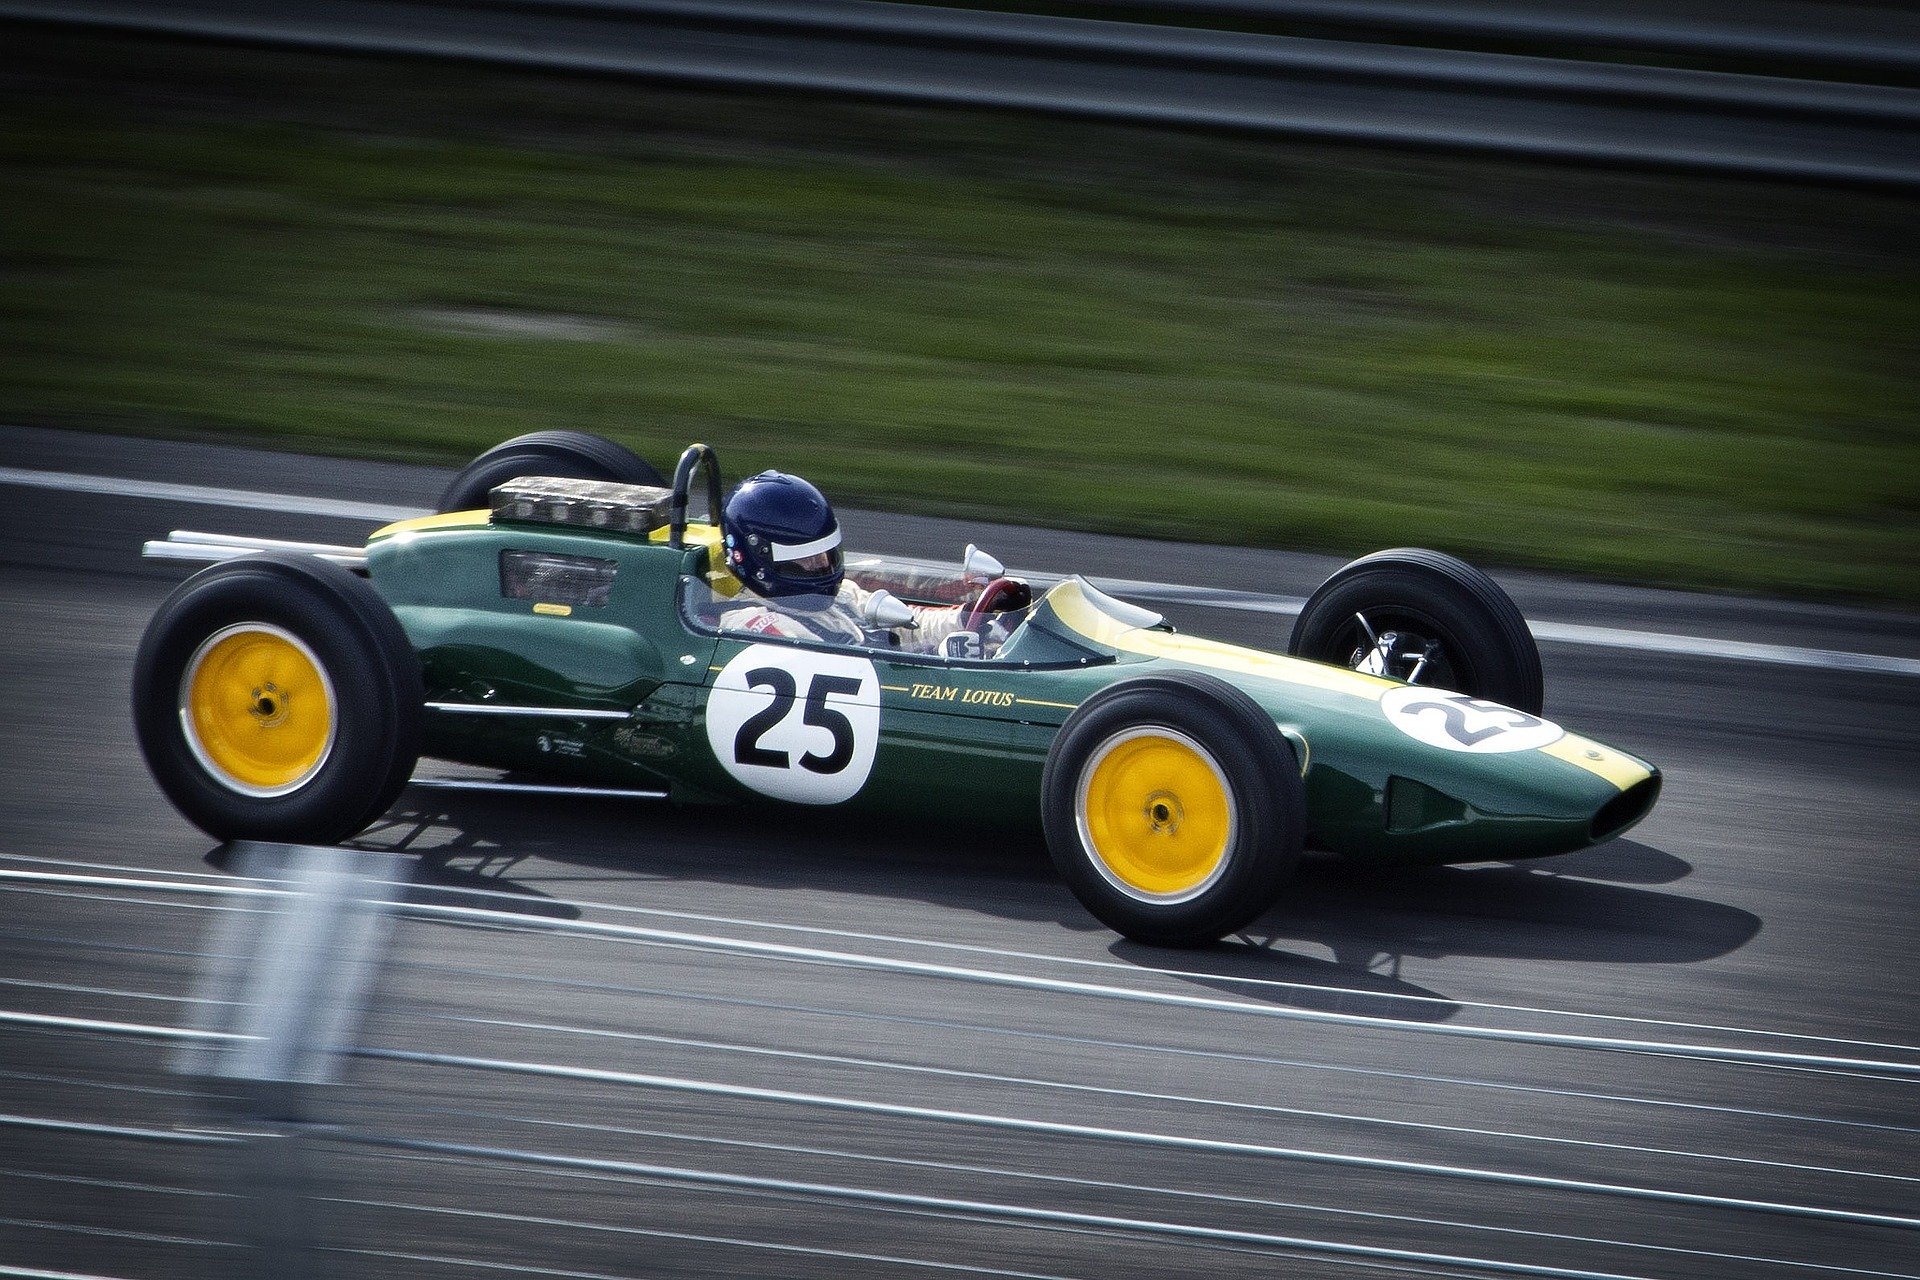 Classic Serck Cooled Lotus G P Racing Car